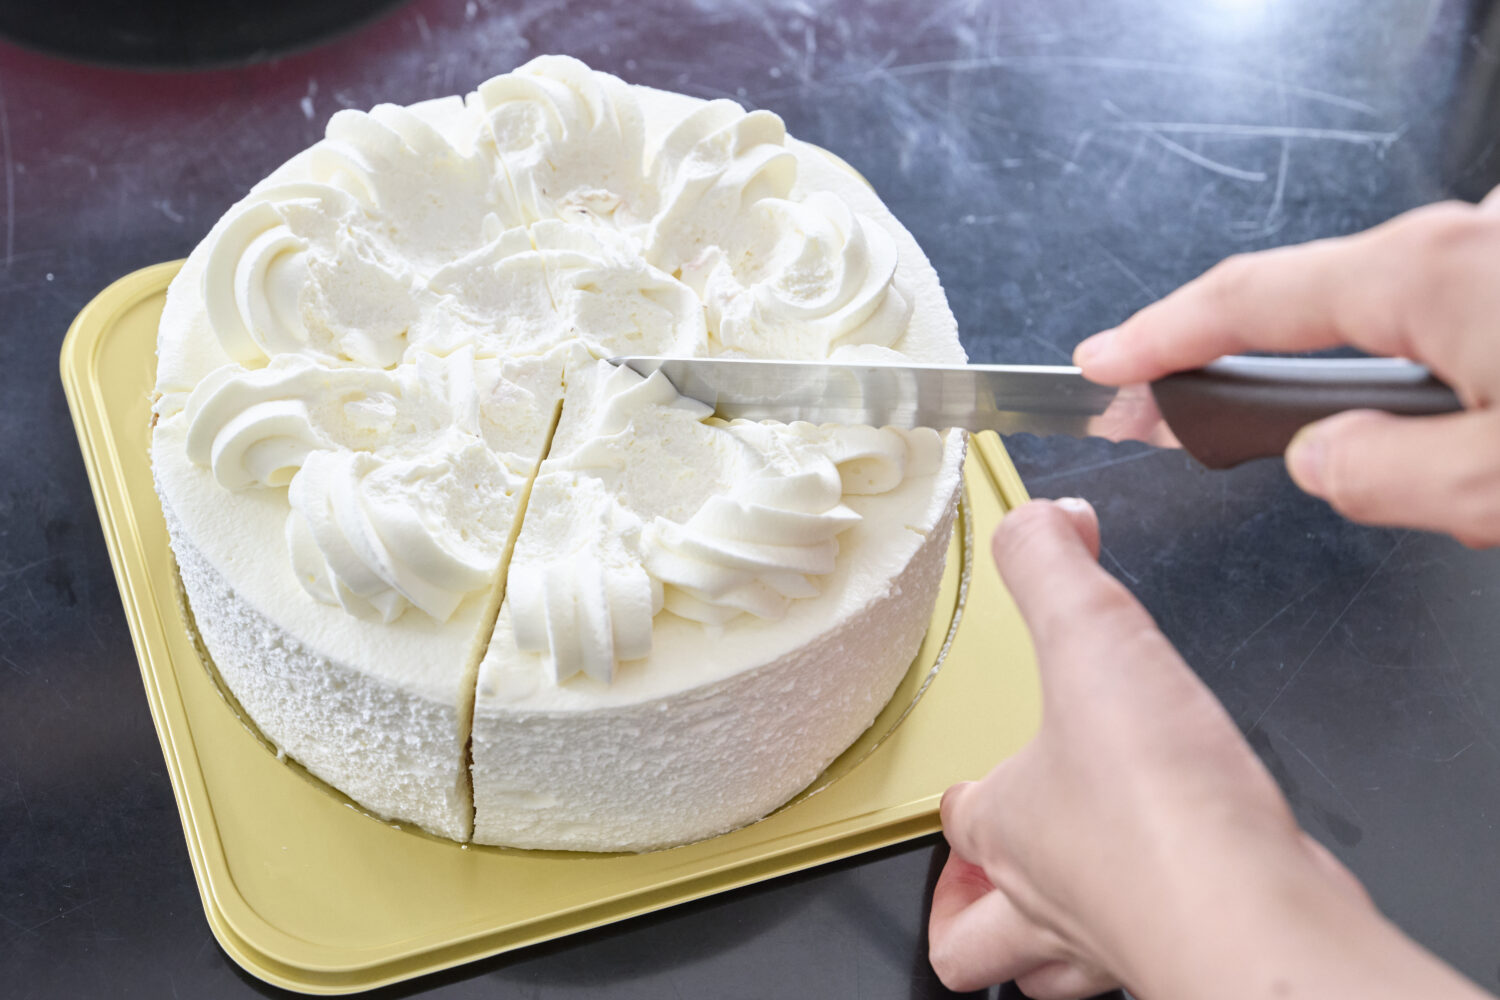 ナイフの刃先をケーキの中心に合わせ、カット開始。